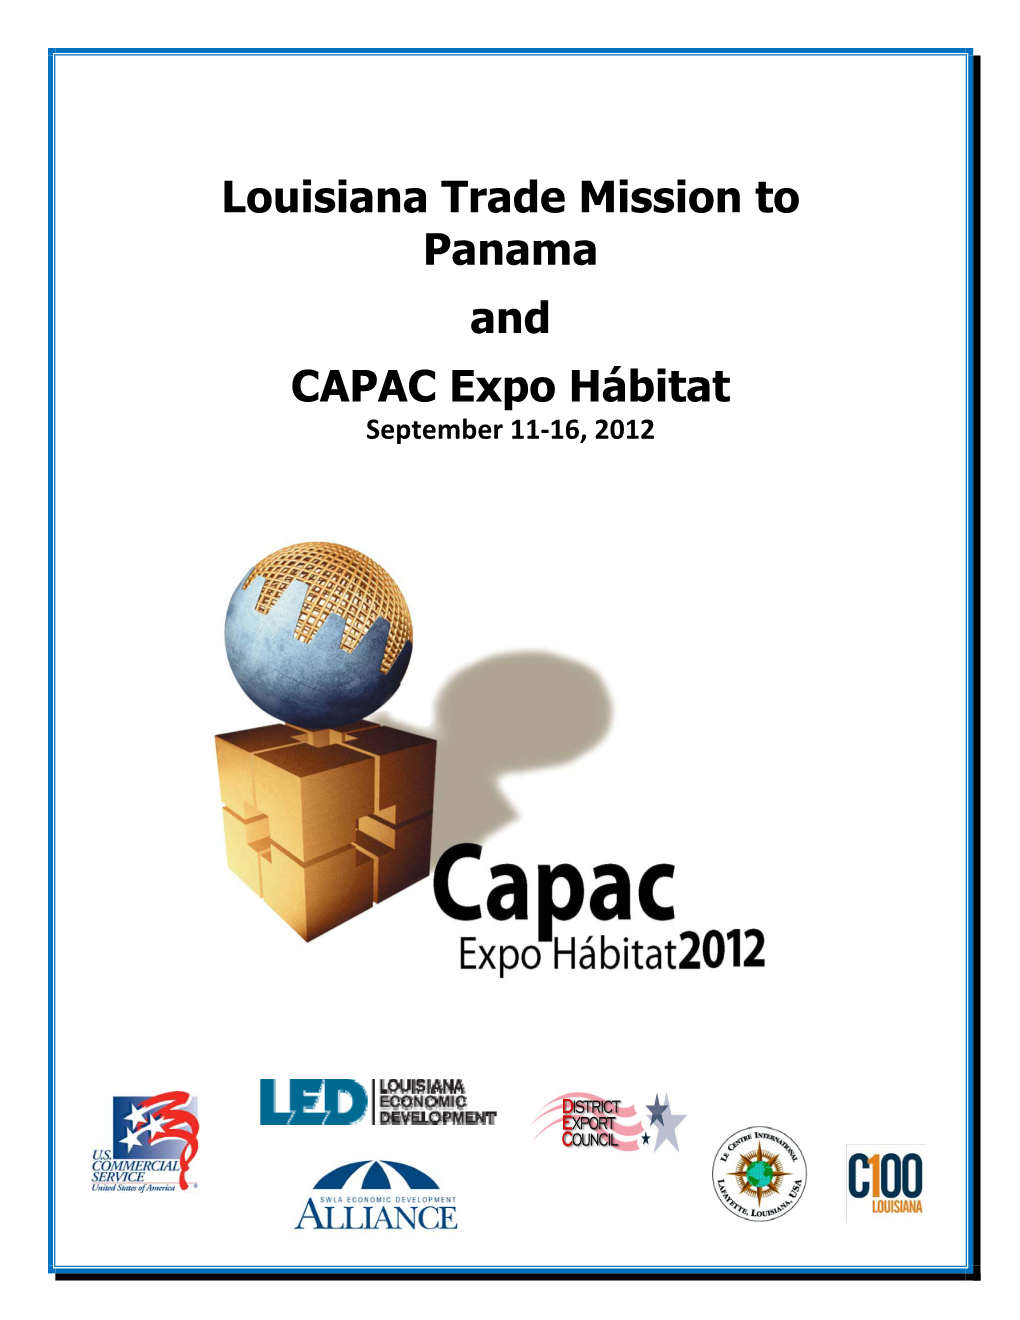 Louisiana Trade Mission to Panama and CAPAC Expo Hábitat